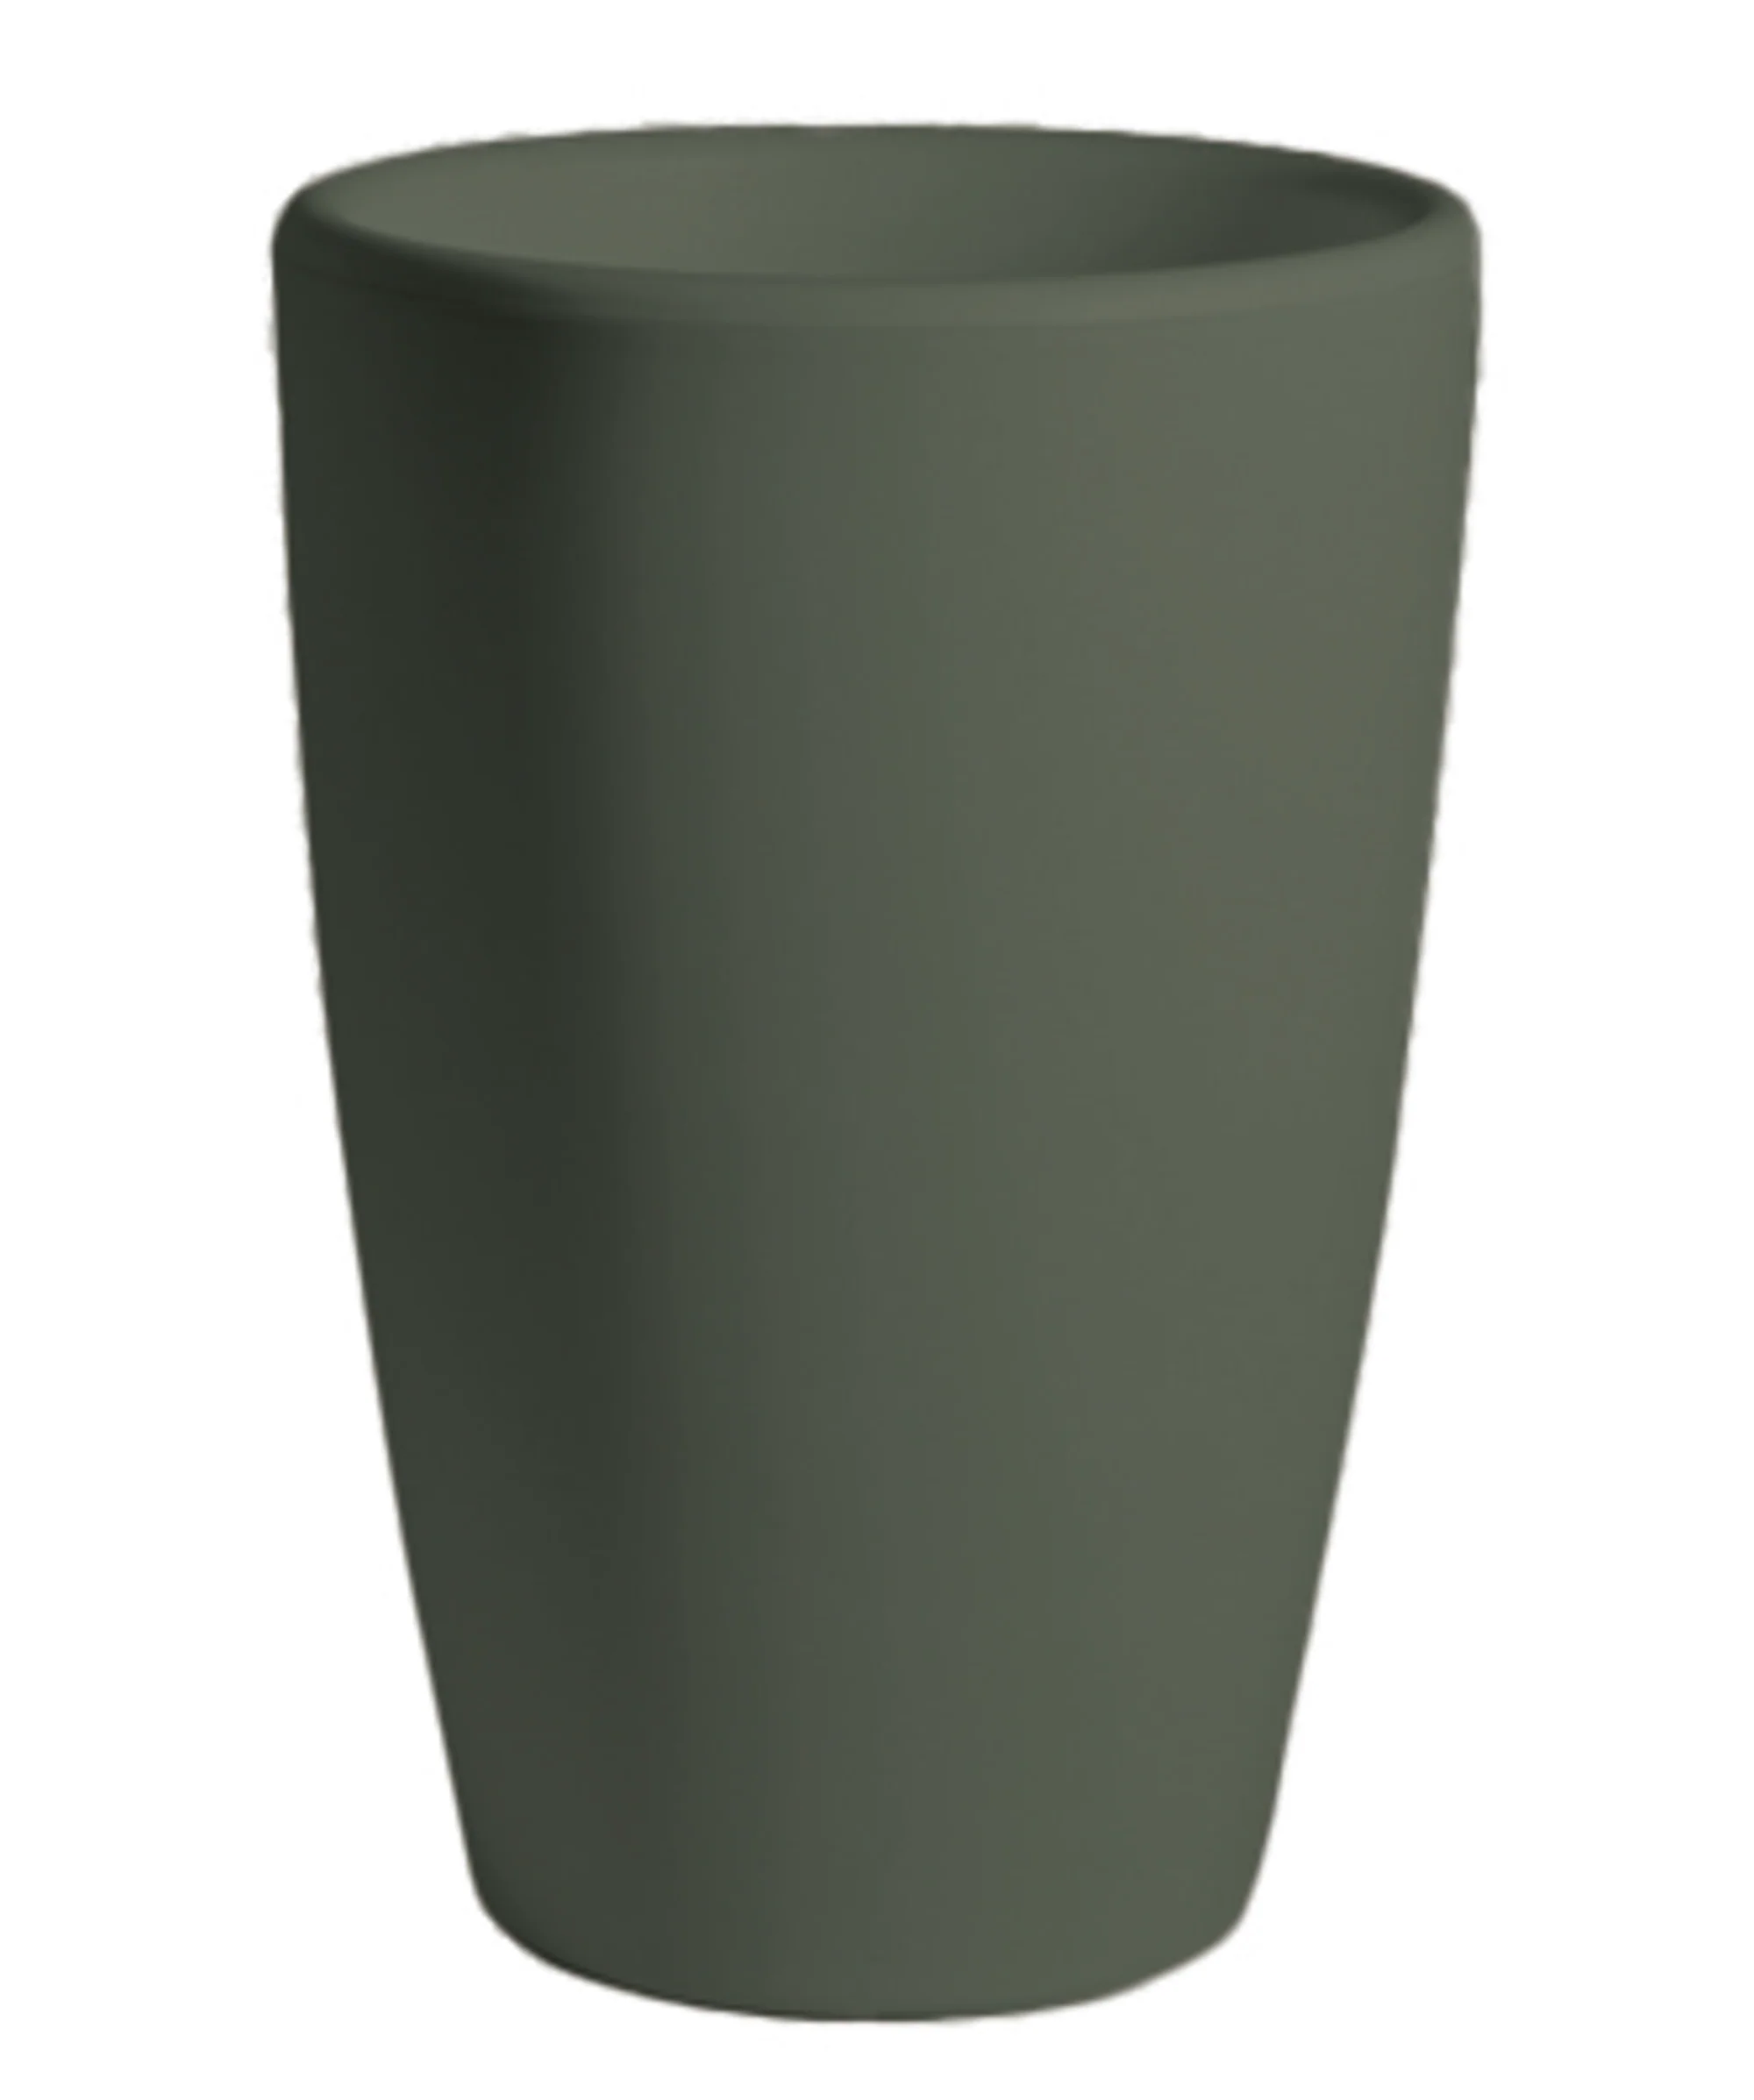 Buiten bloempot Essence 45xh66,5 cm Vase Olive Green kunststof